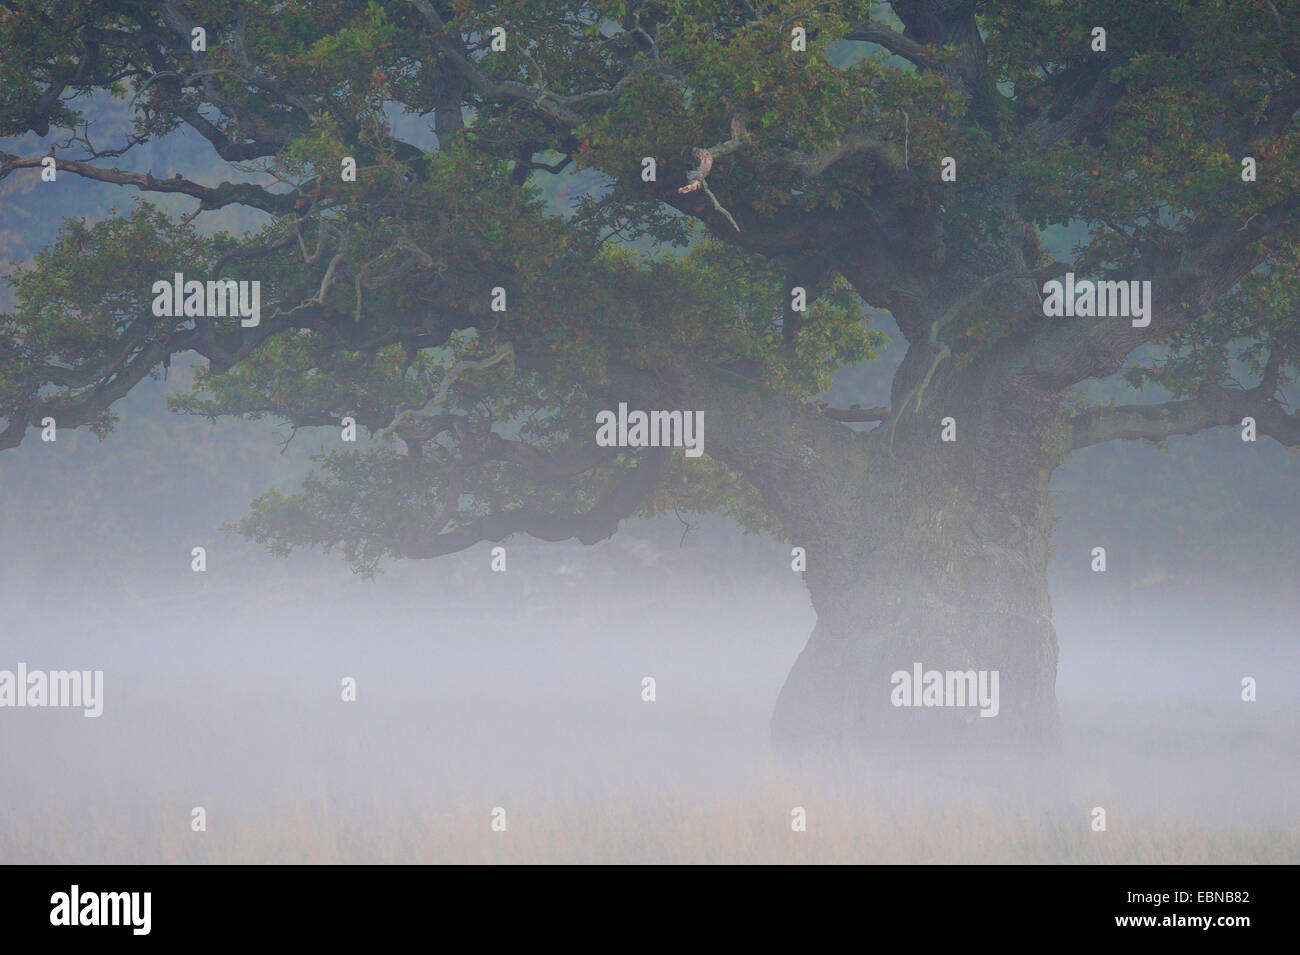 Le chêne commun, le chêne pédonculé, chêne pédonculé (Quercus robur), Mystic misty ambiance avec un chêne vieux de plusieurs centaines d'années, le Danemark Banque D'Images